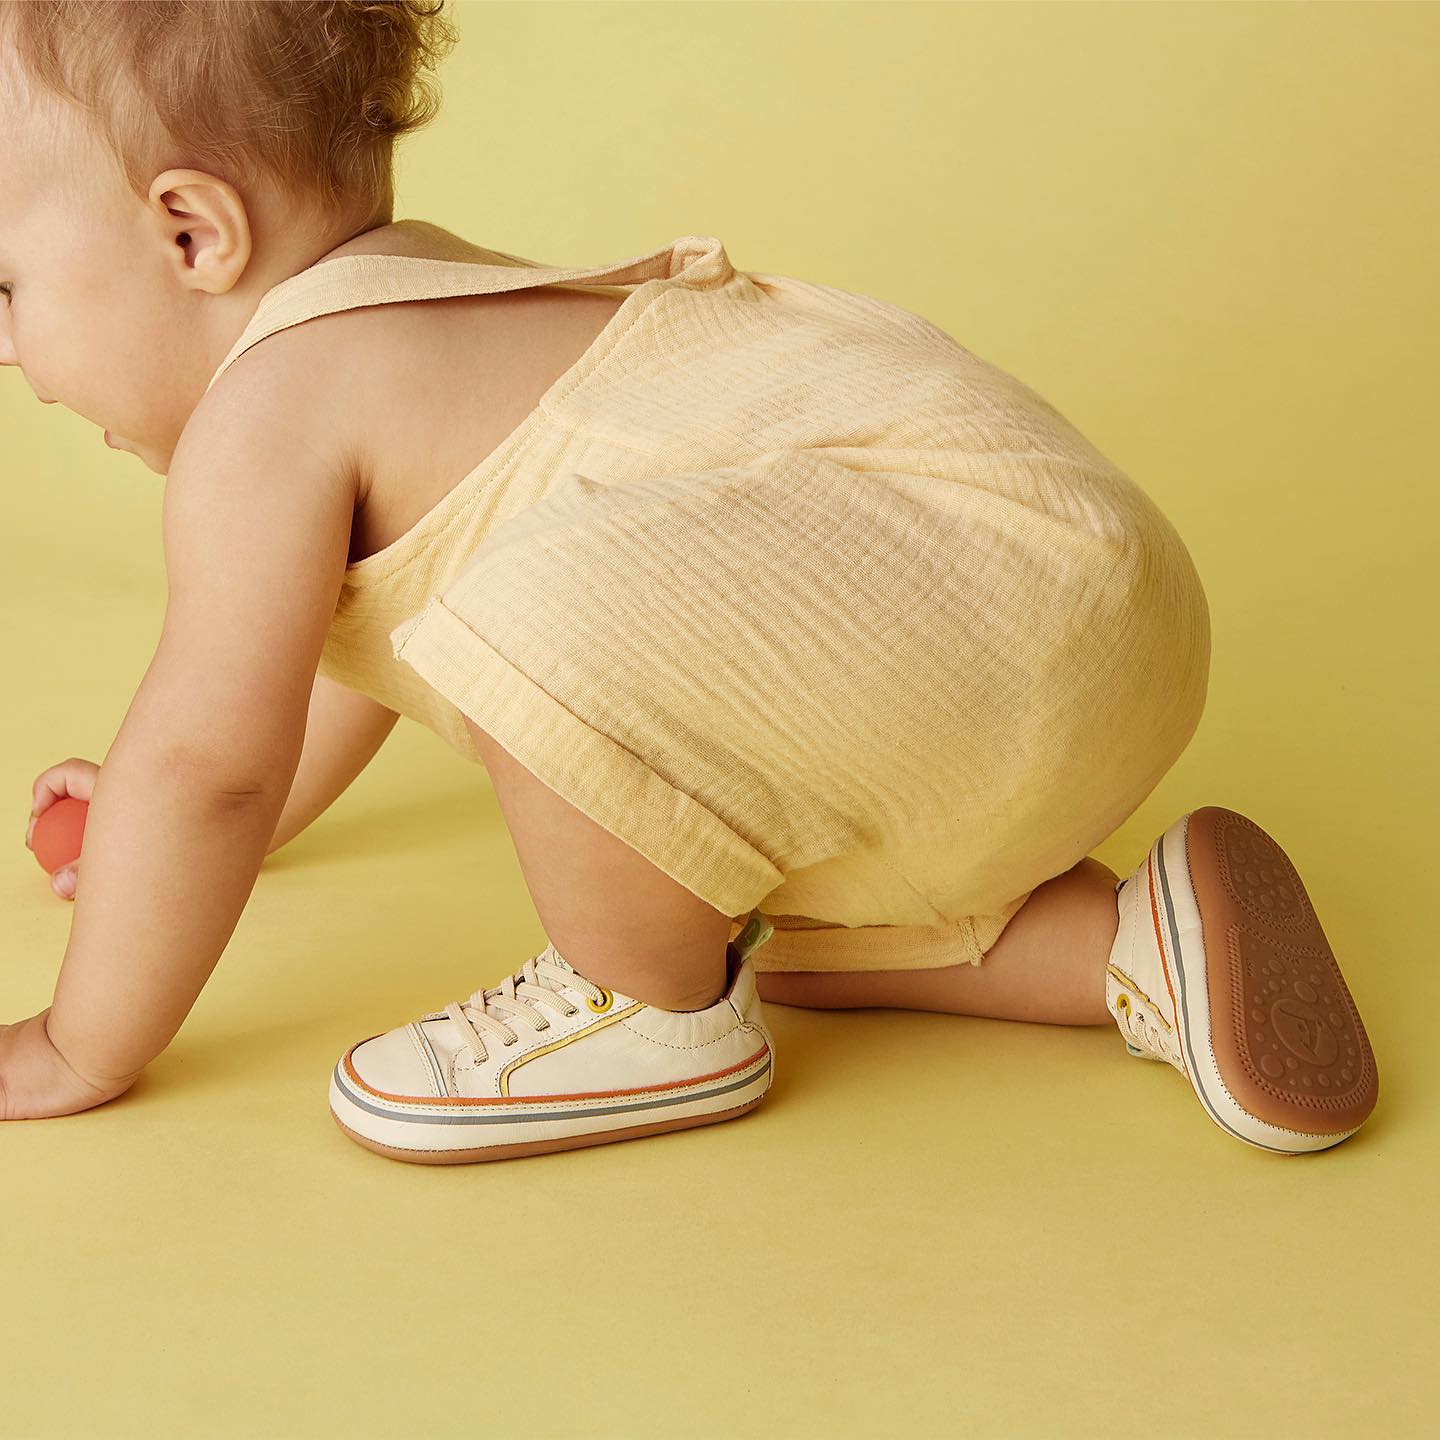 Chaussures bébé premiers pas : 4 critères indispensables